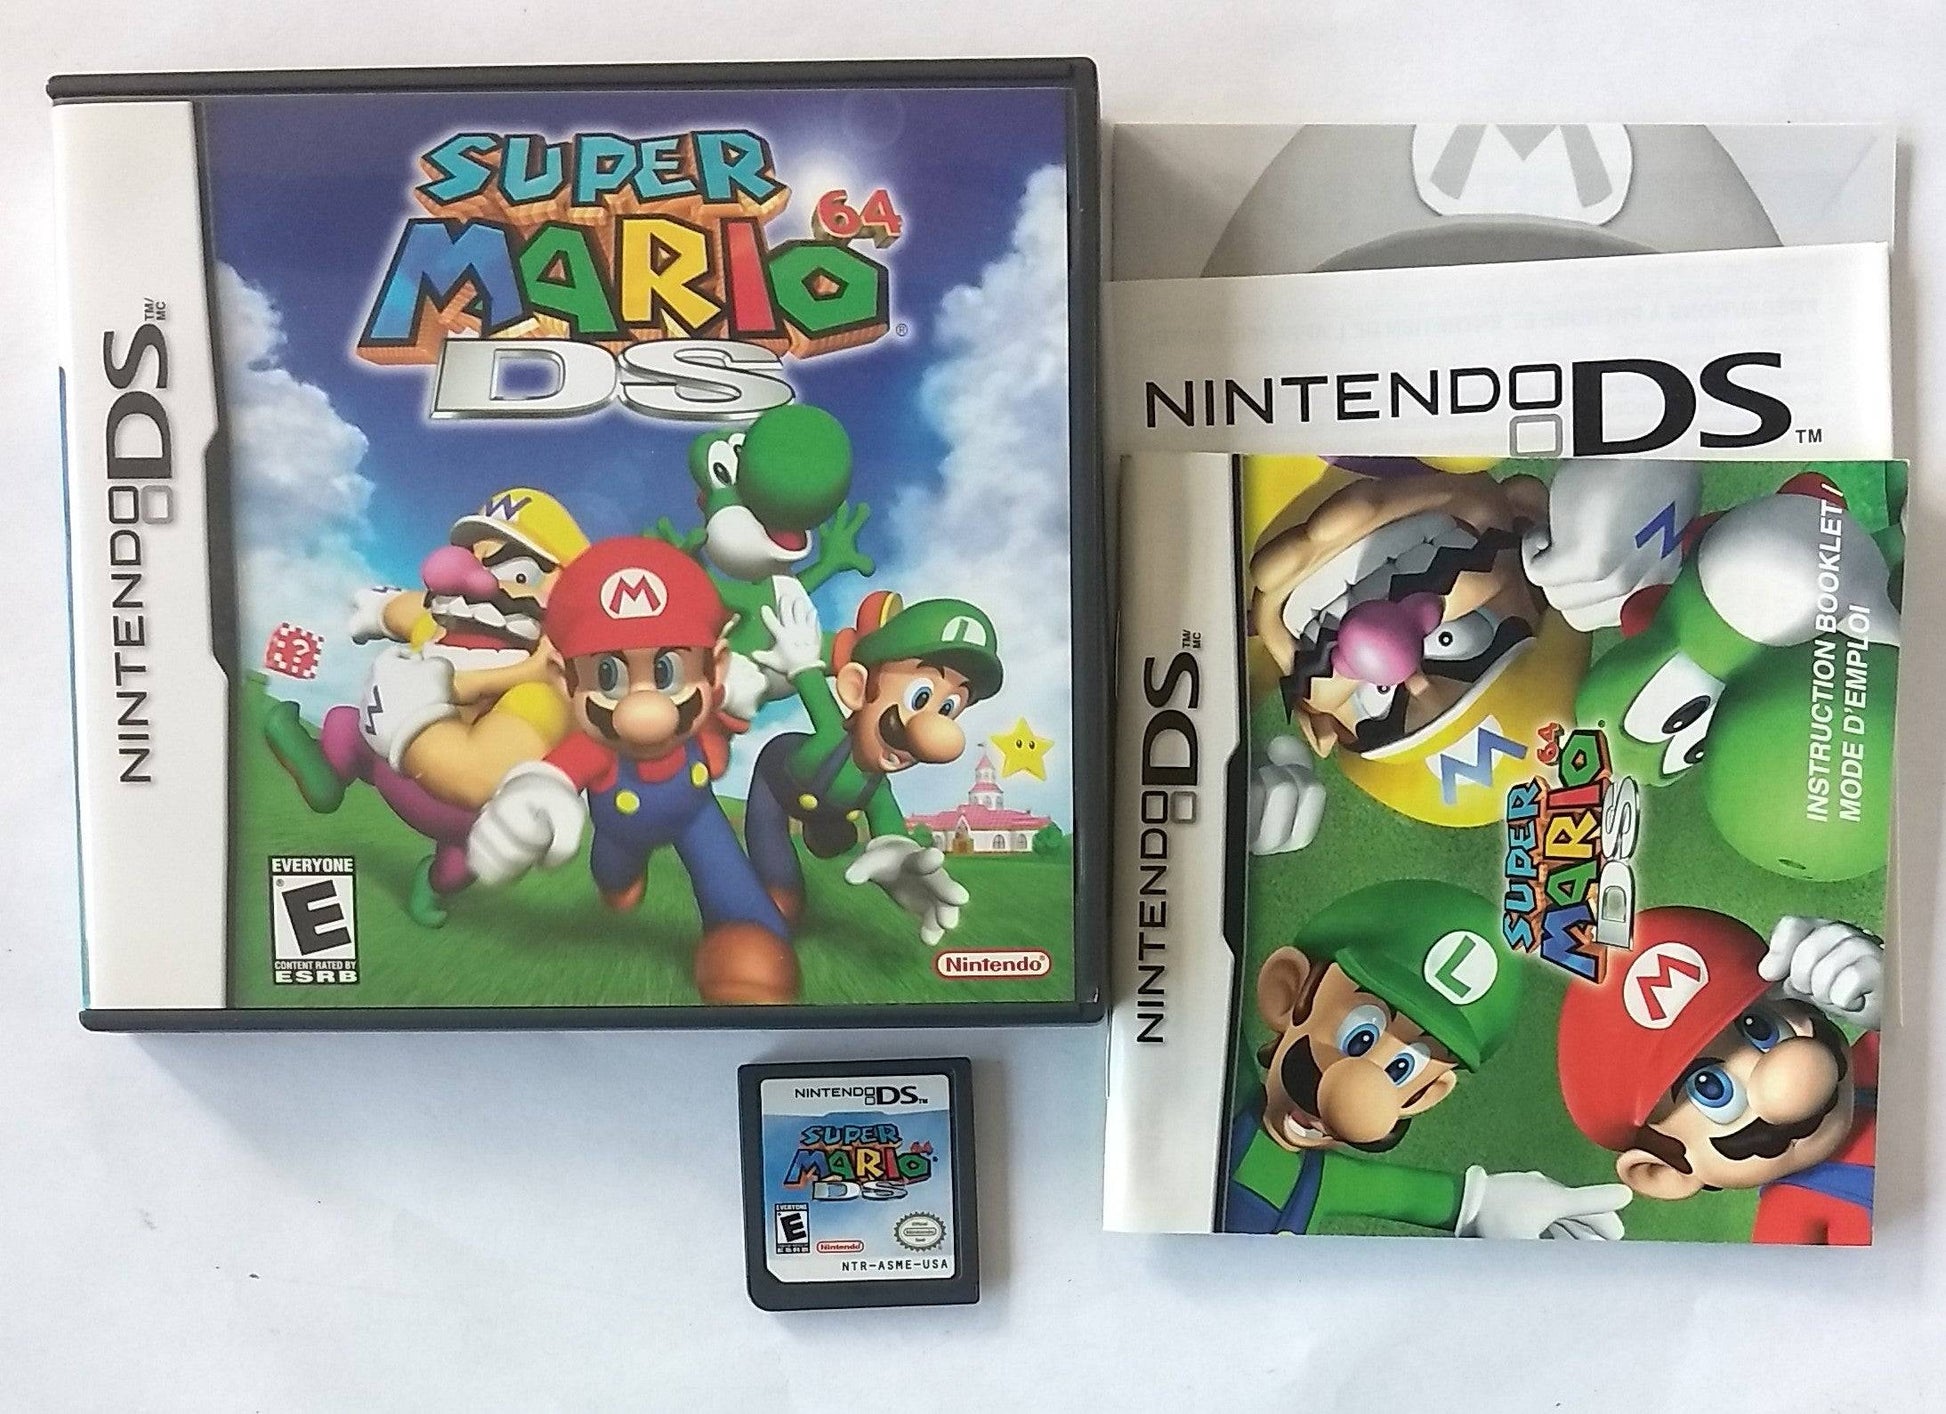 SUPER MARIO 64 DS (NINTENDO DS) - jeux video game-x